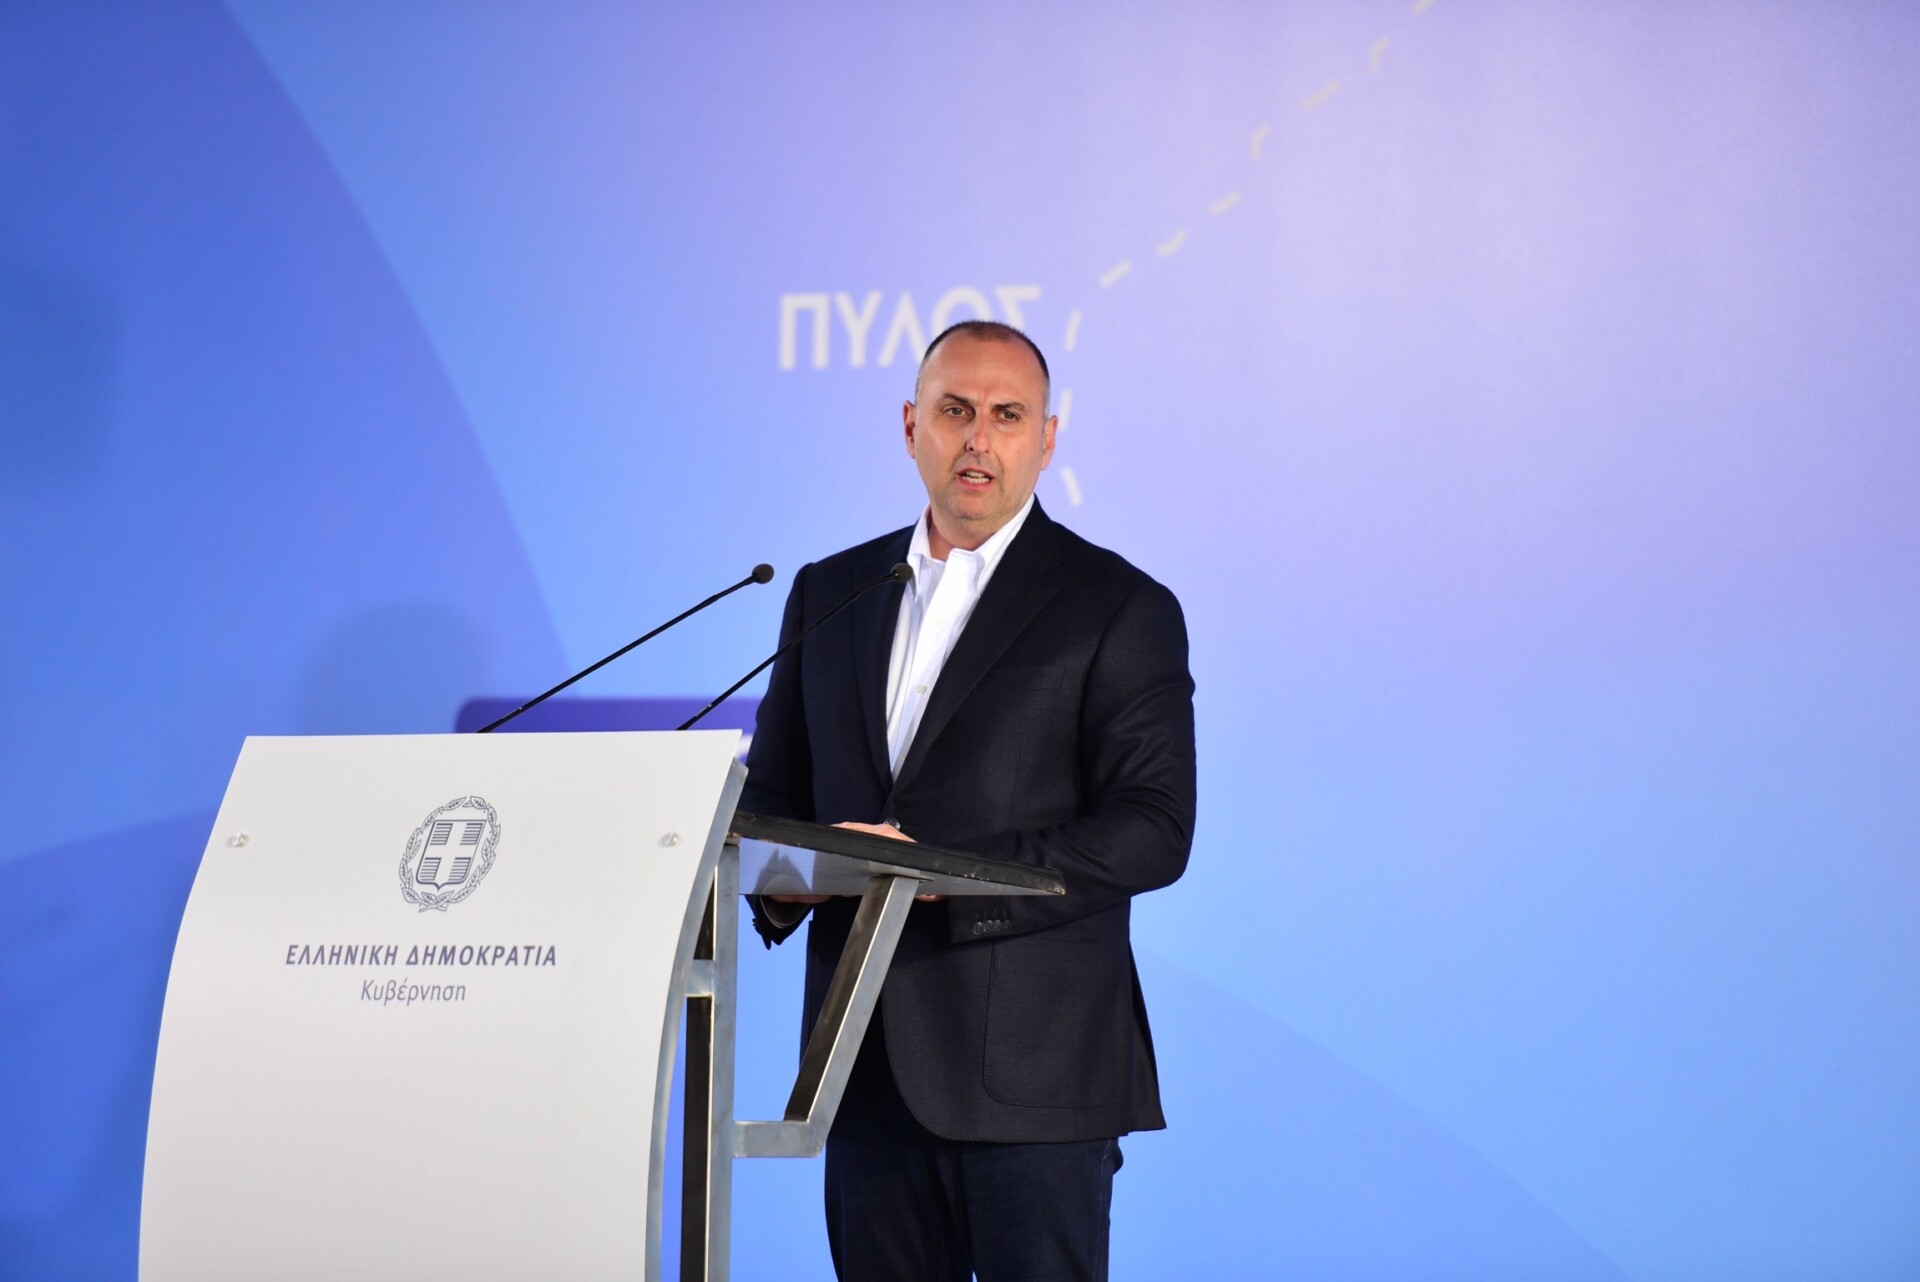 Ο Υφυπουργός Υποδομών και Μεταφορών, αρμόδιος για τις Υποδομές, Γιώργος Καραγιάννης@ΔΤ